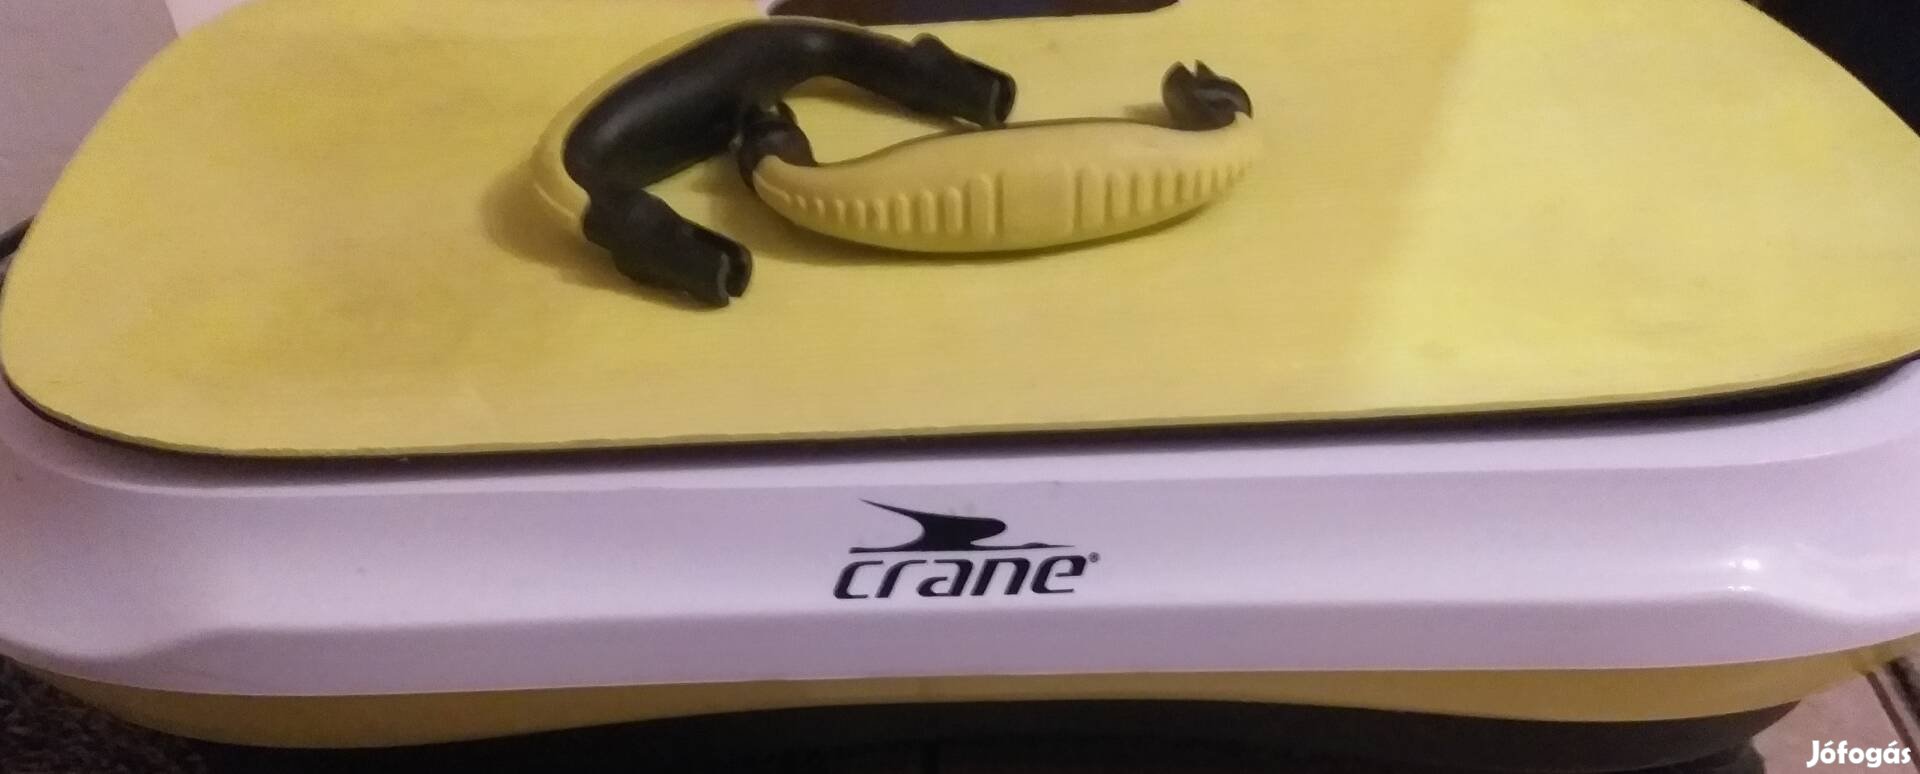 Crane vibrációs tréner